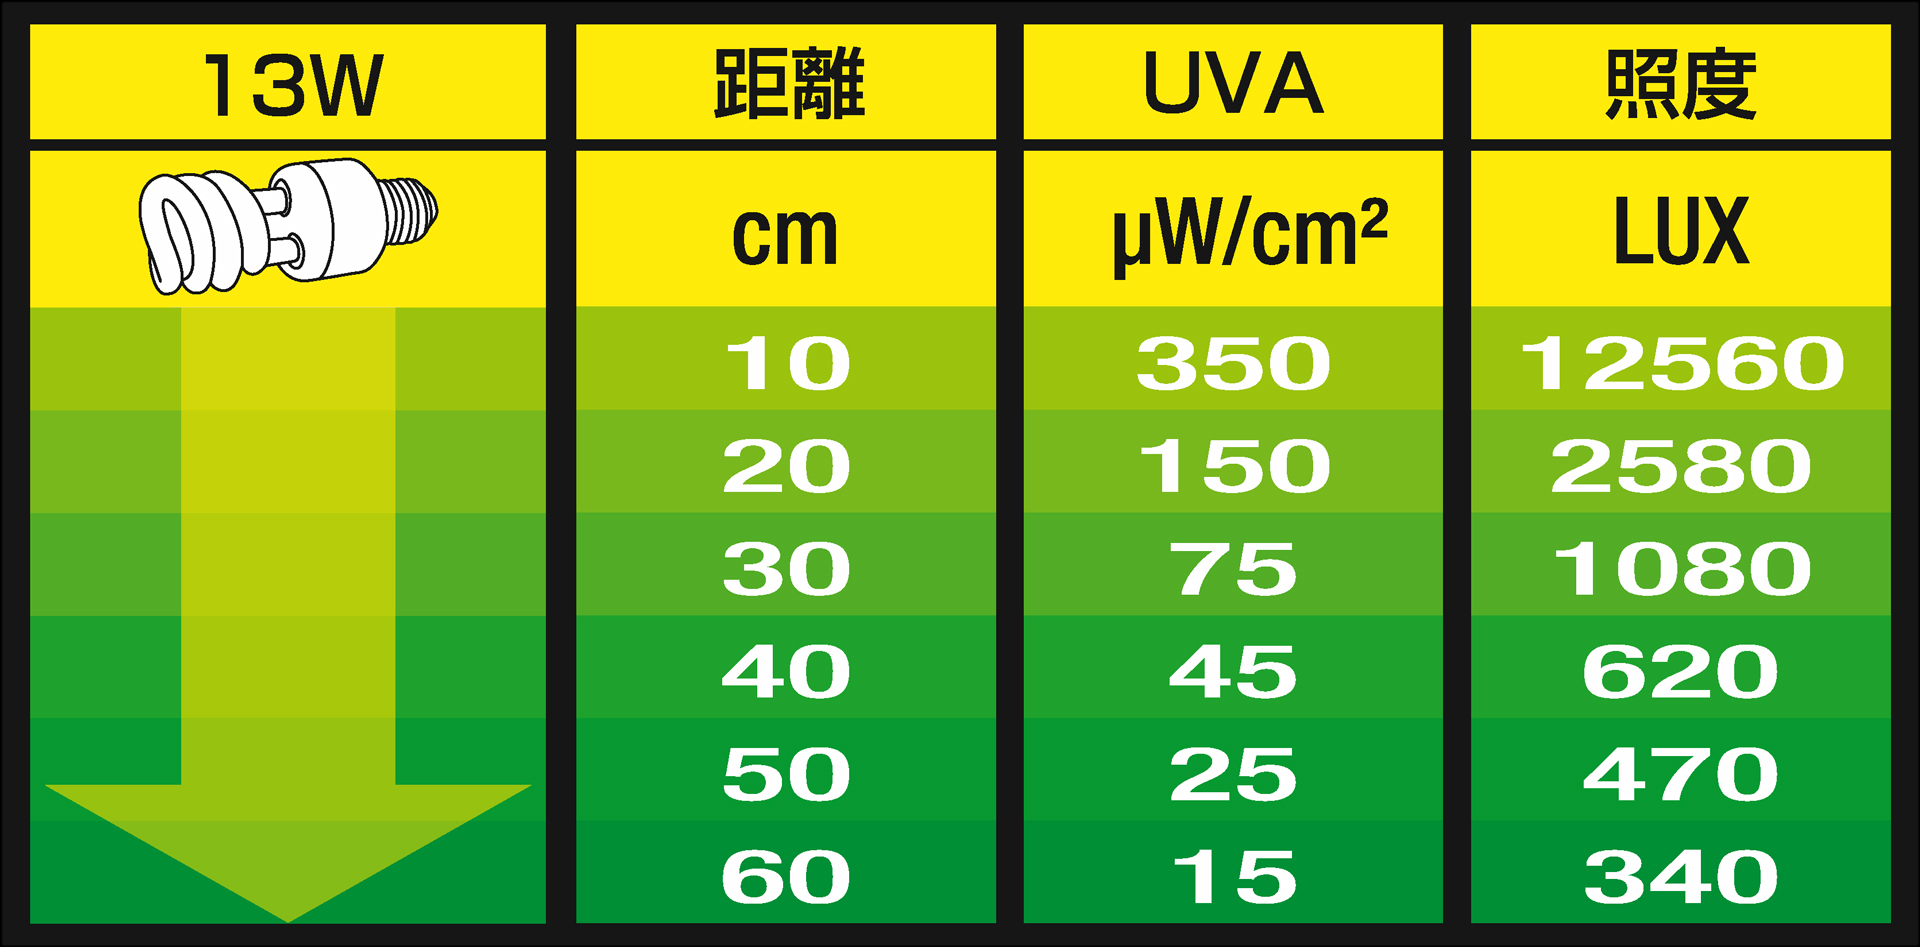  натуральный light 13W дистанция и UVB * UVA * ... раз критерий 